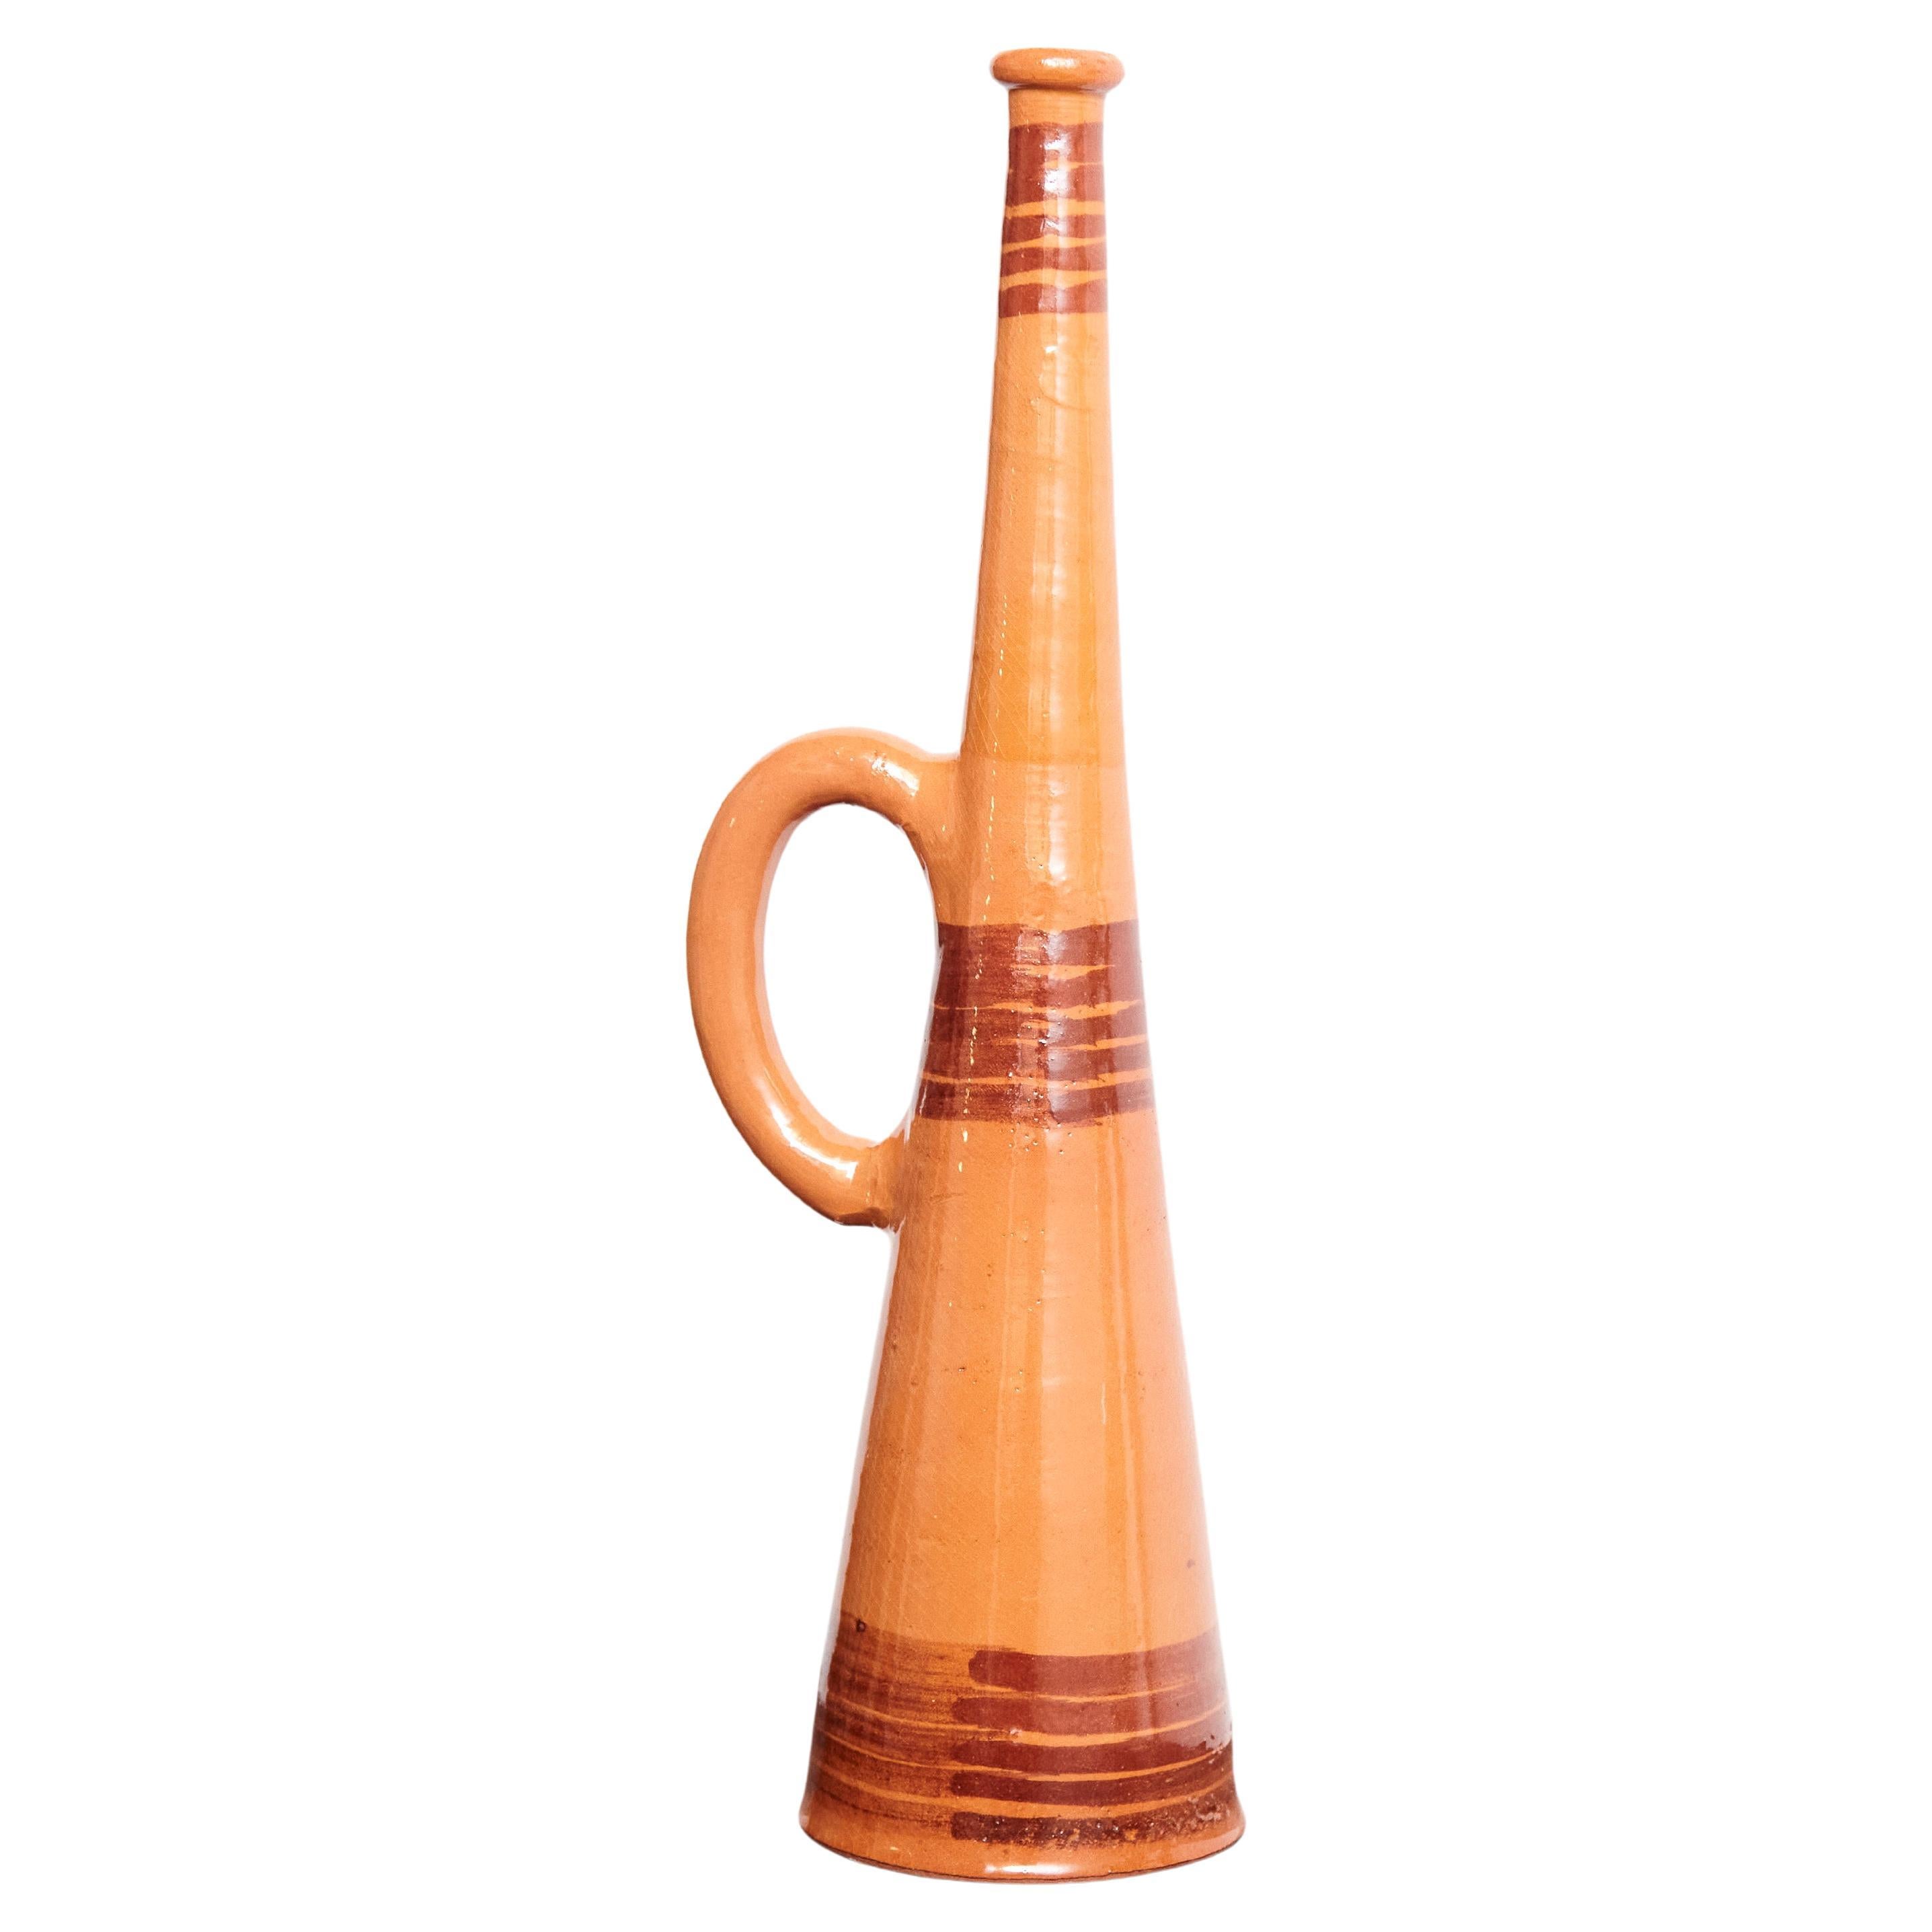 Trumpet traditionnel espagnol en céramique, datant d'environ 1960